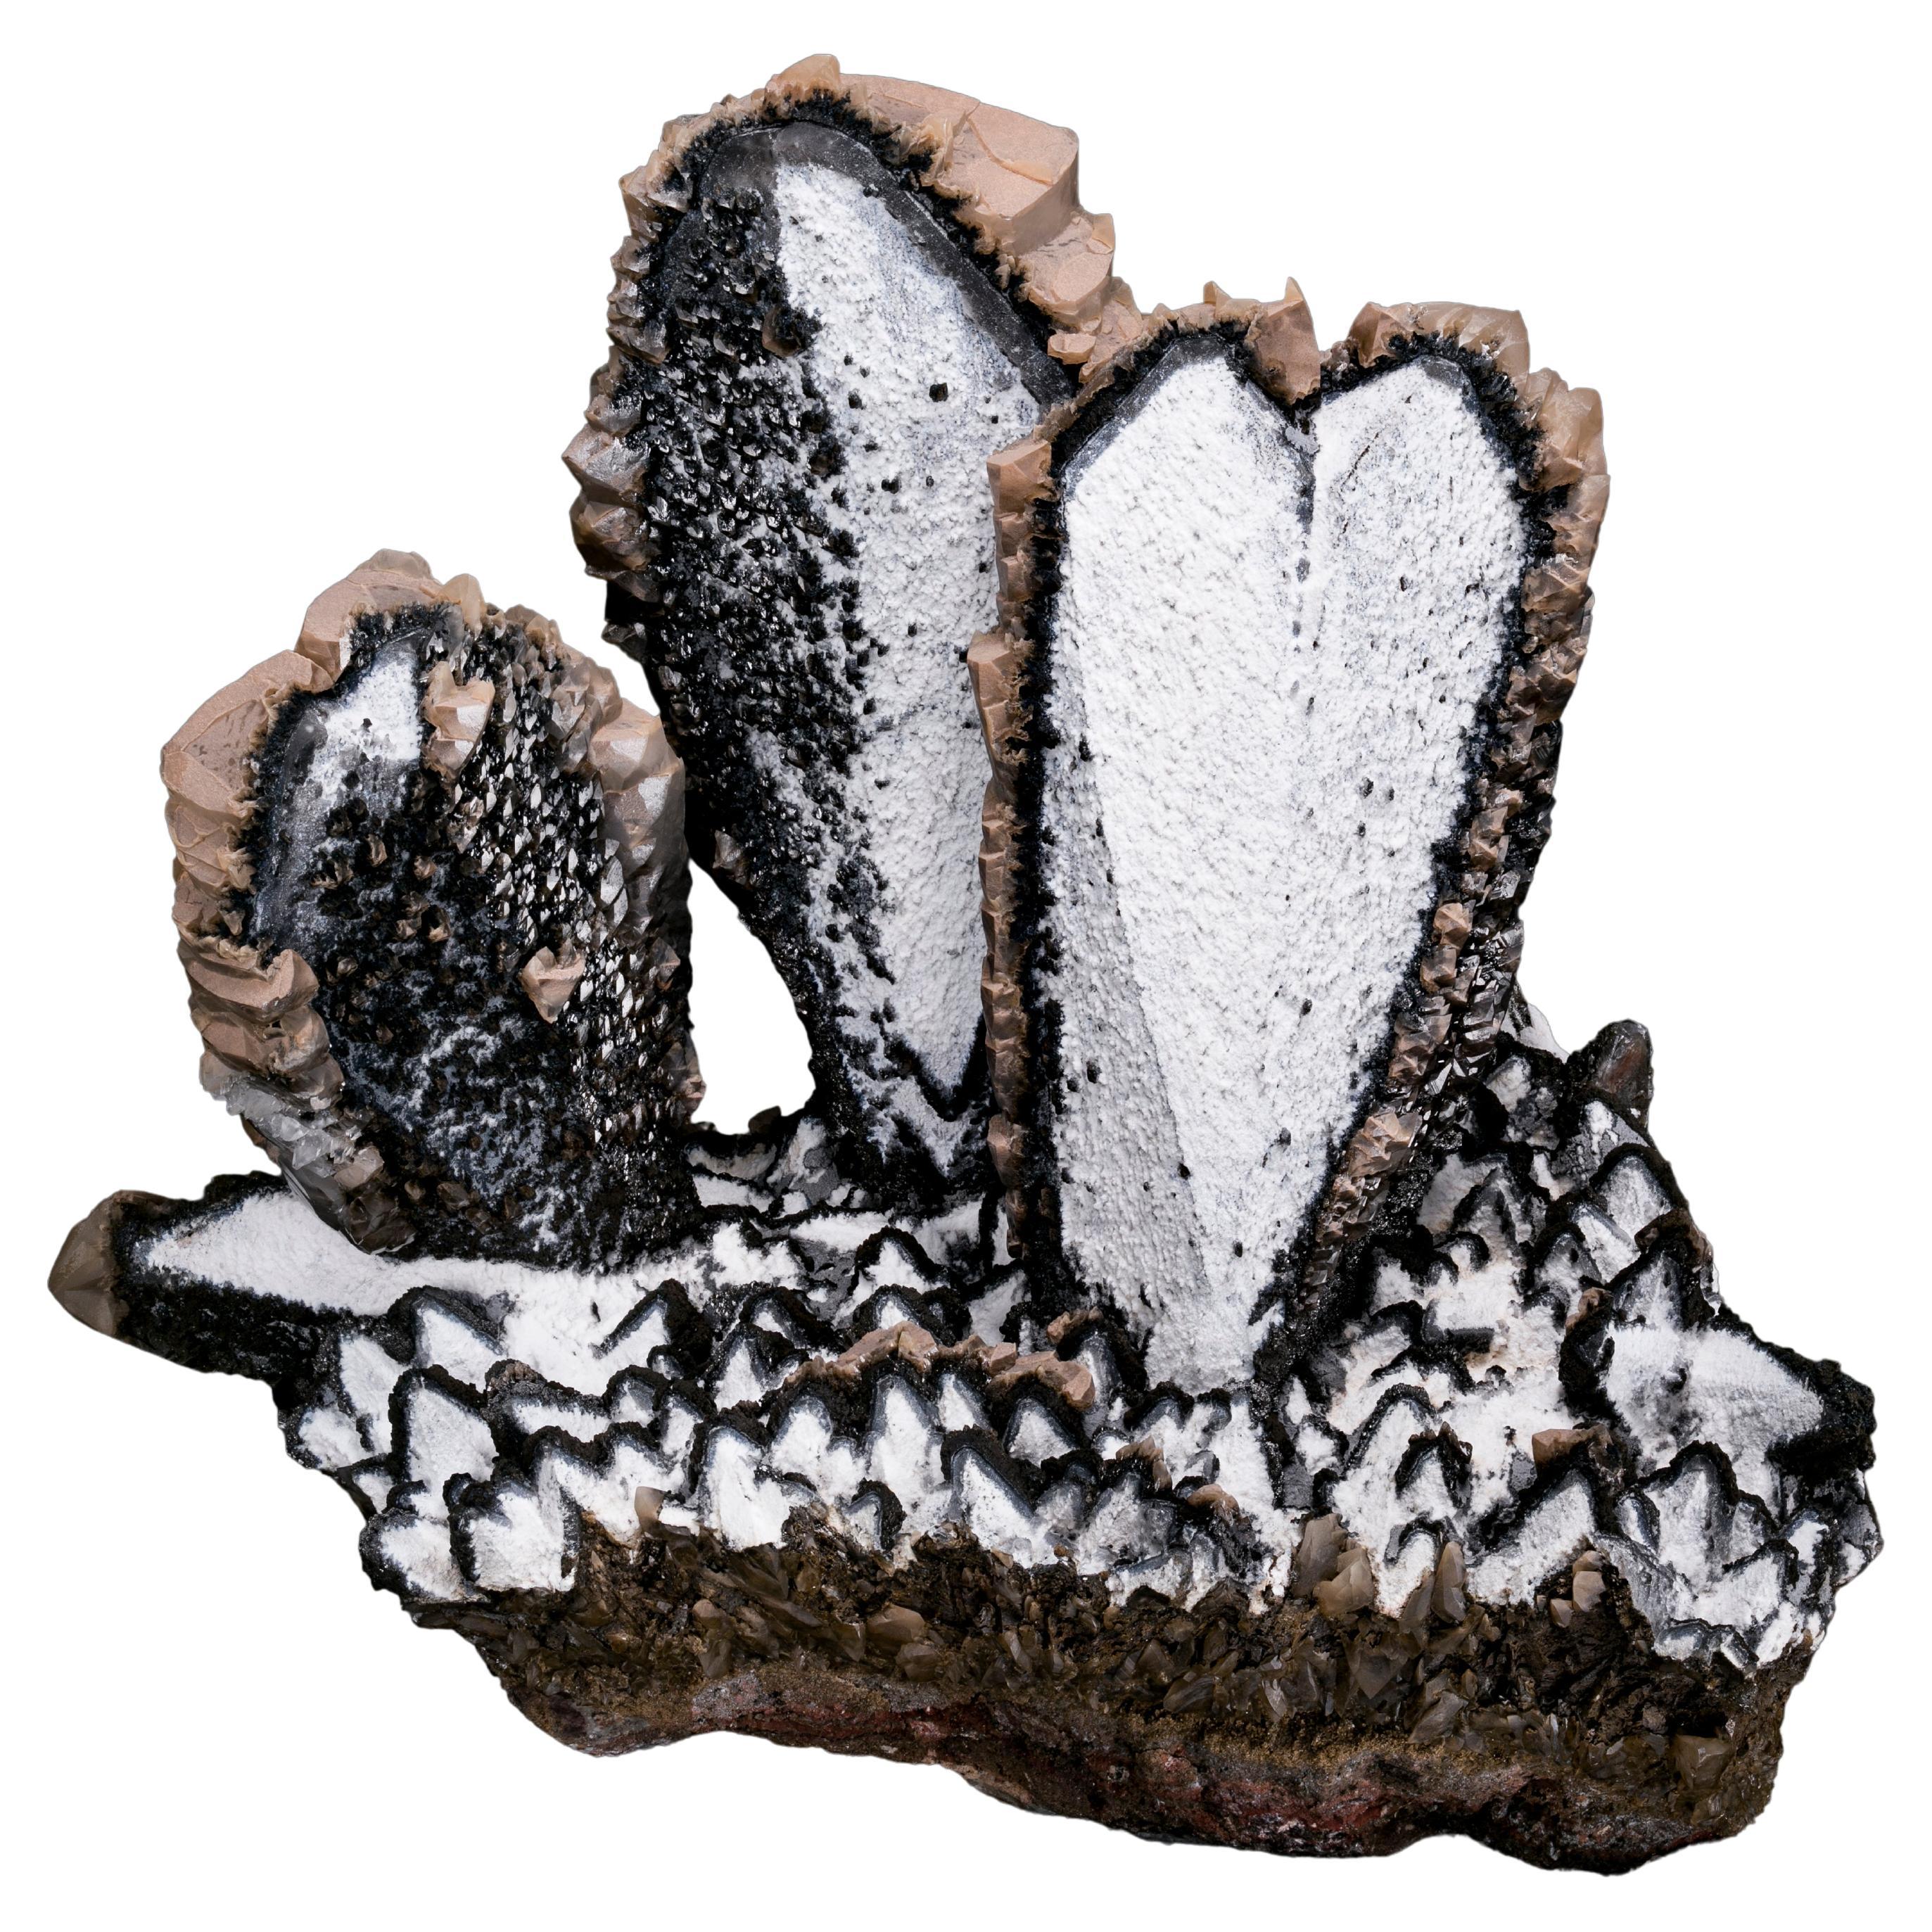 Black and White Calcite Heart Twin Mineral Specimen, Palmarejo, Mexico For Sale